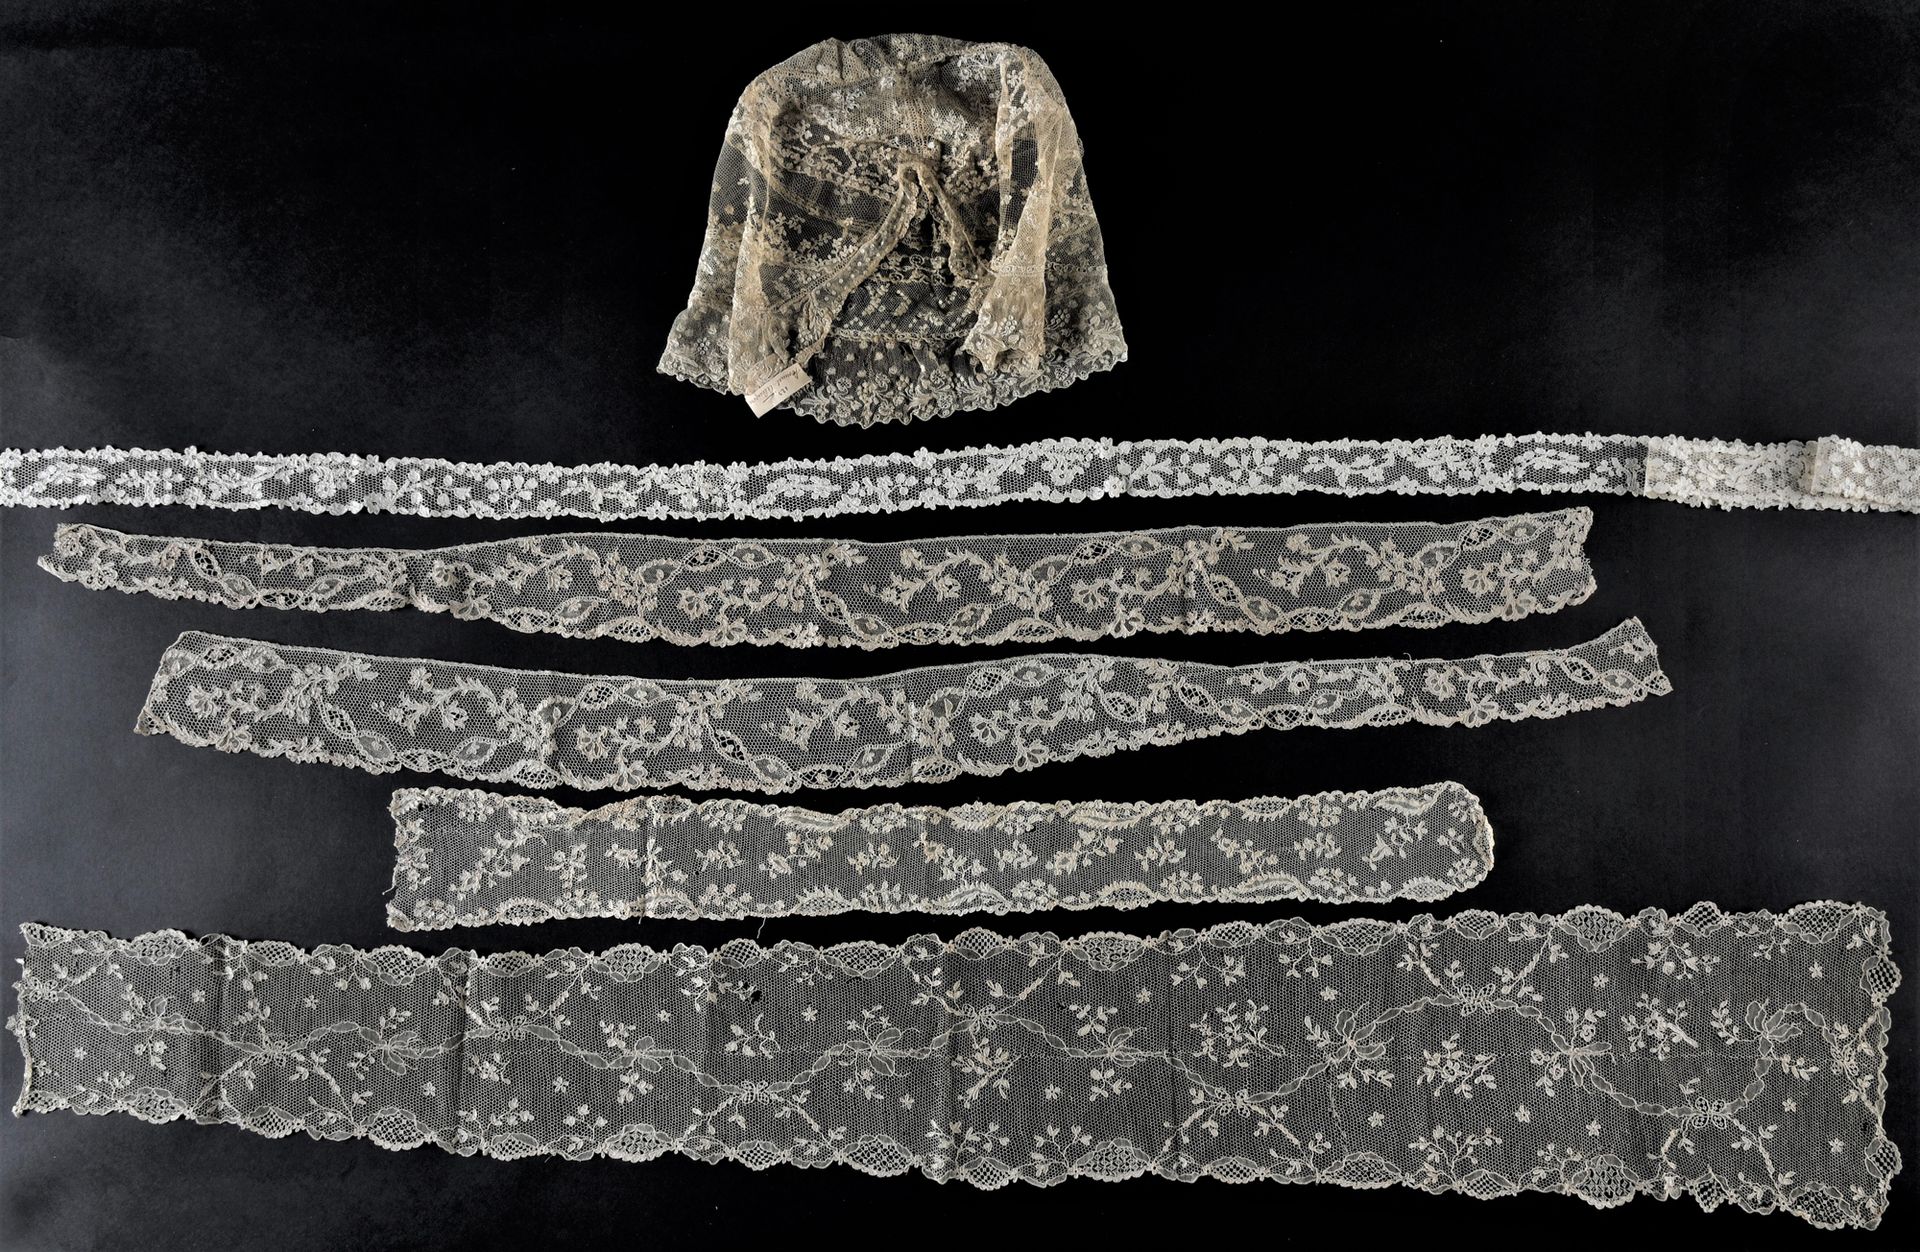 Null Accessori per costumi femminili in pizzo ad ago, Argentan, 1760-70 circa.

&hellip;